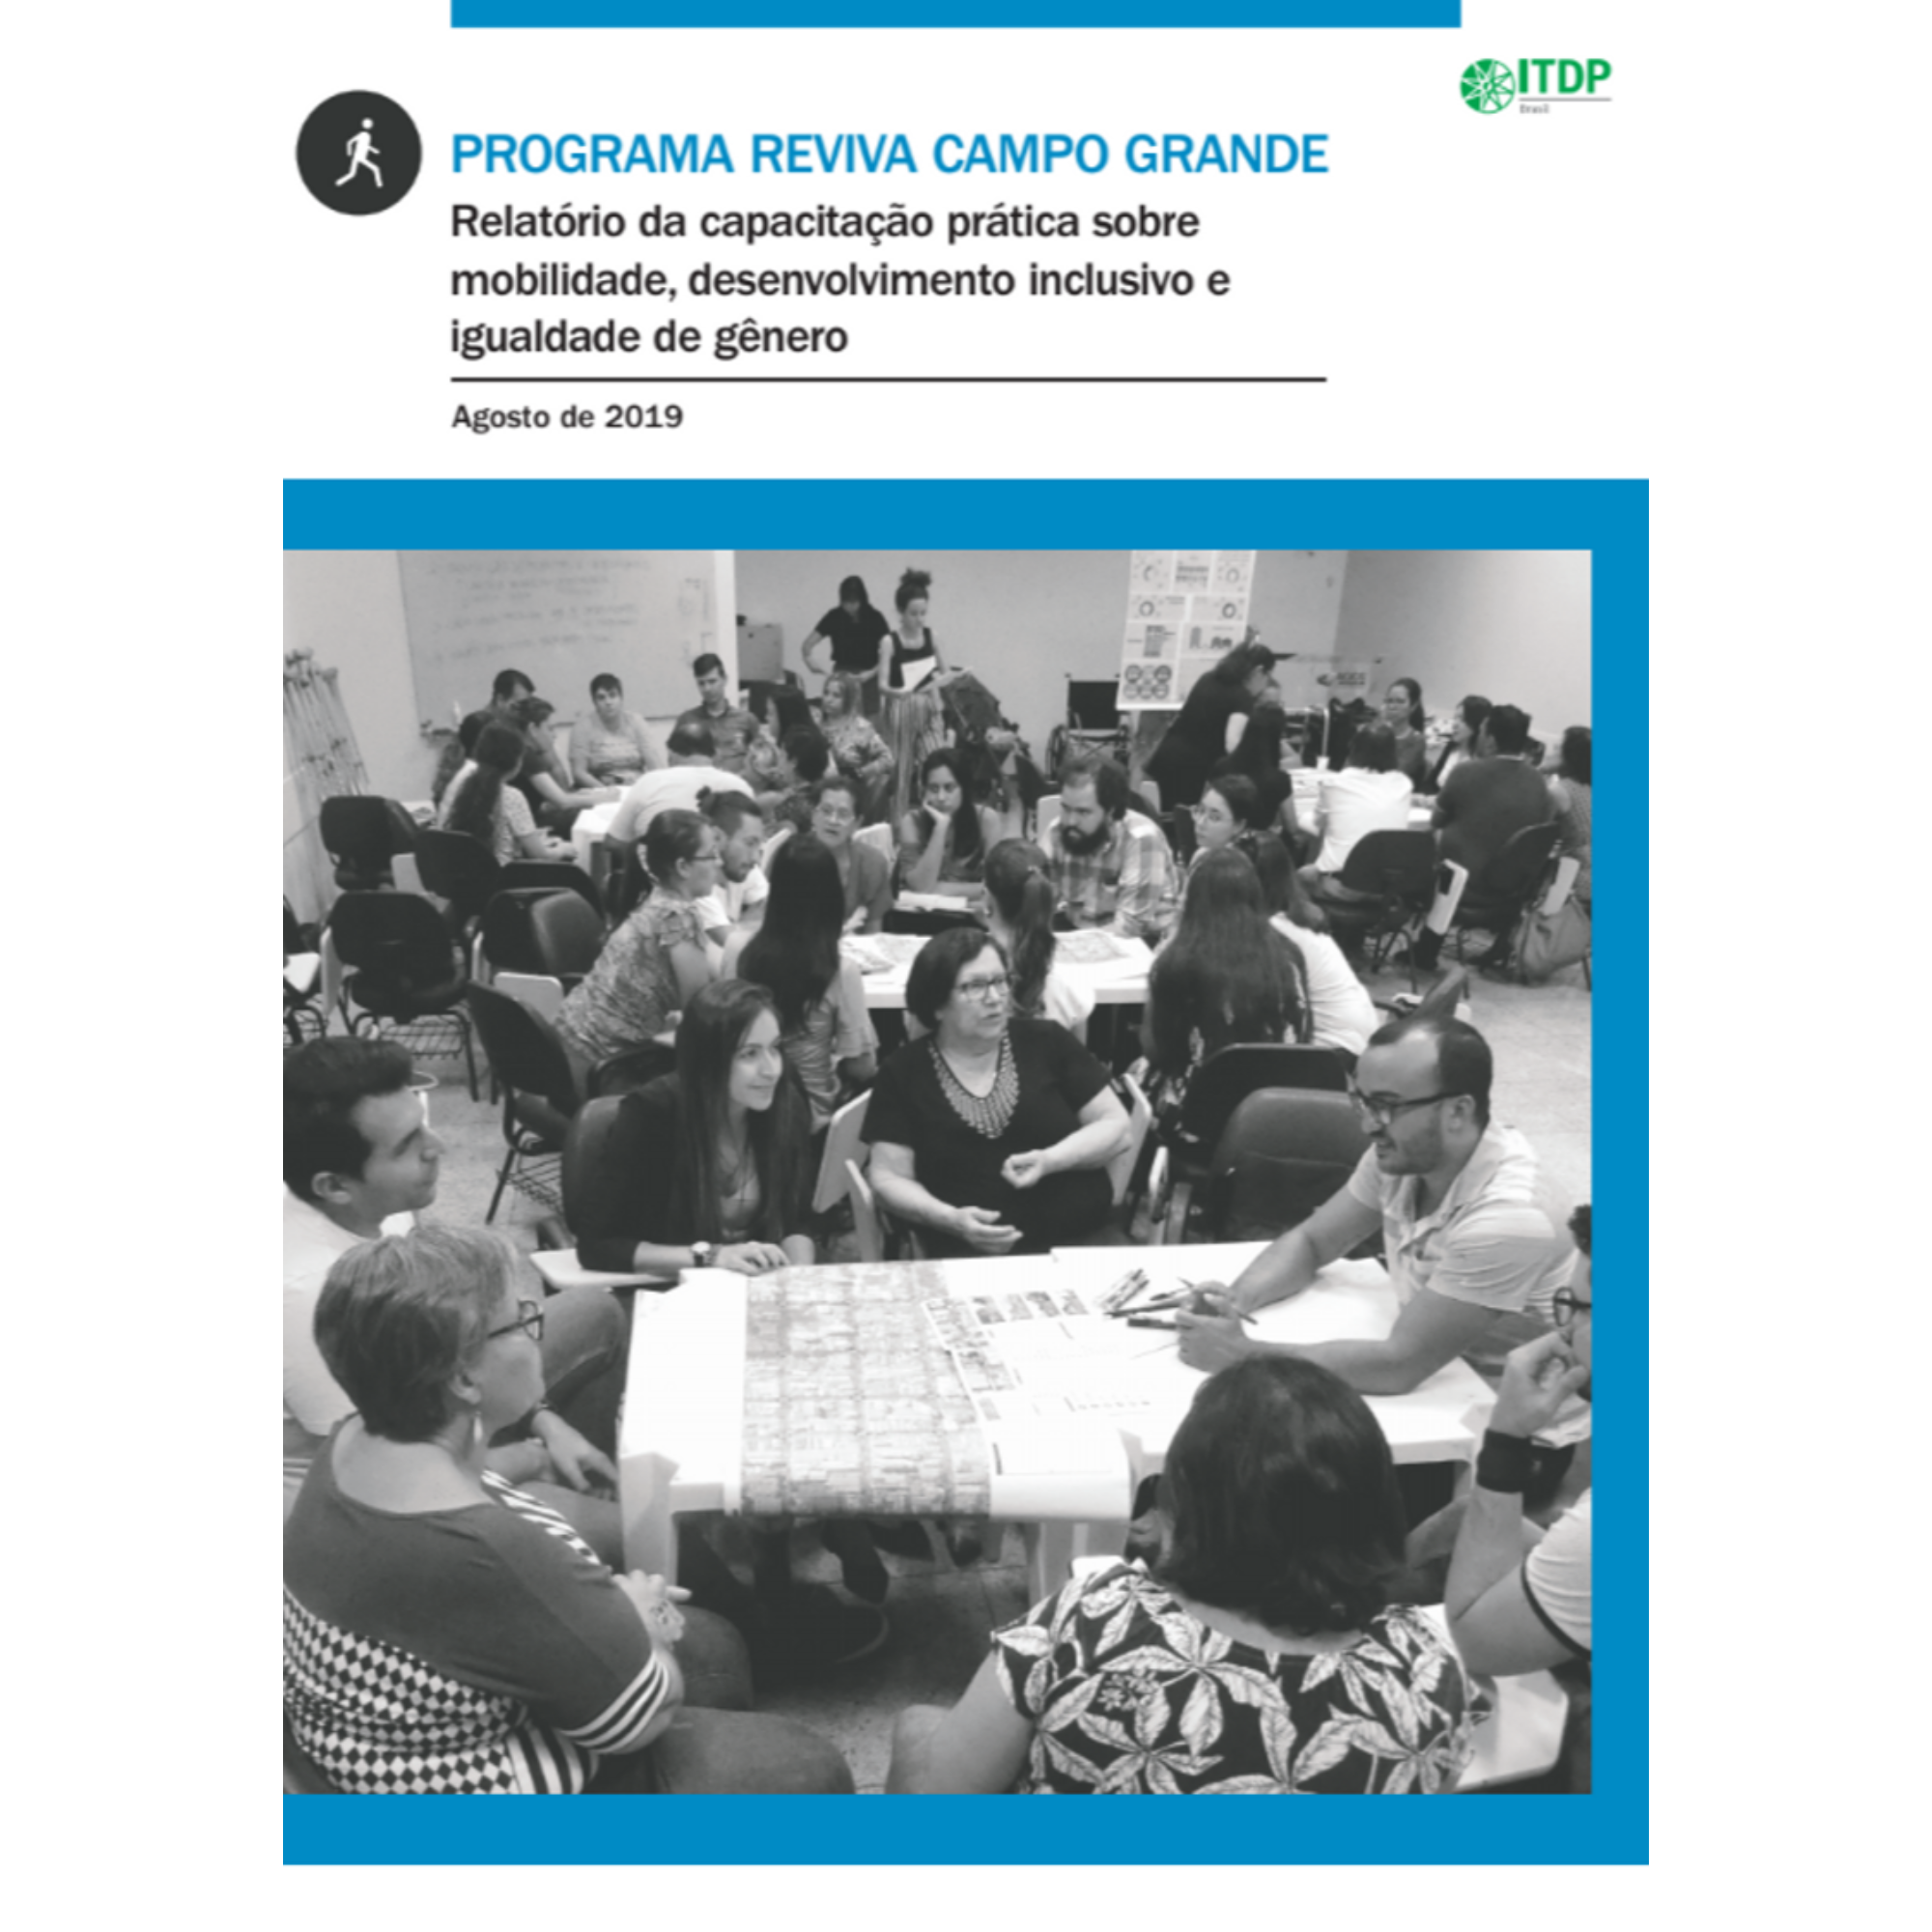 Relatório da capacitação prática sobre mobilidade, desenvolvimento inclusivo e igualdade de gênero